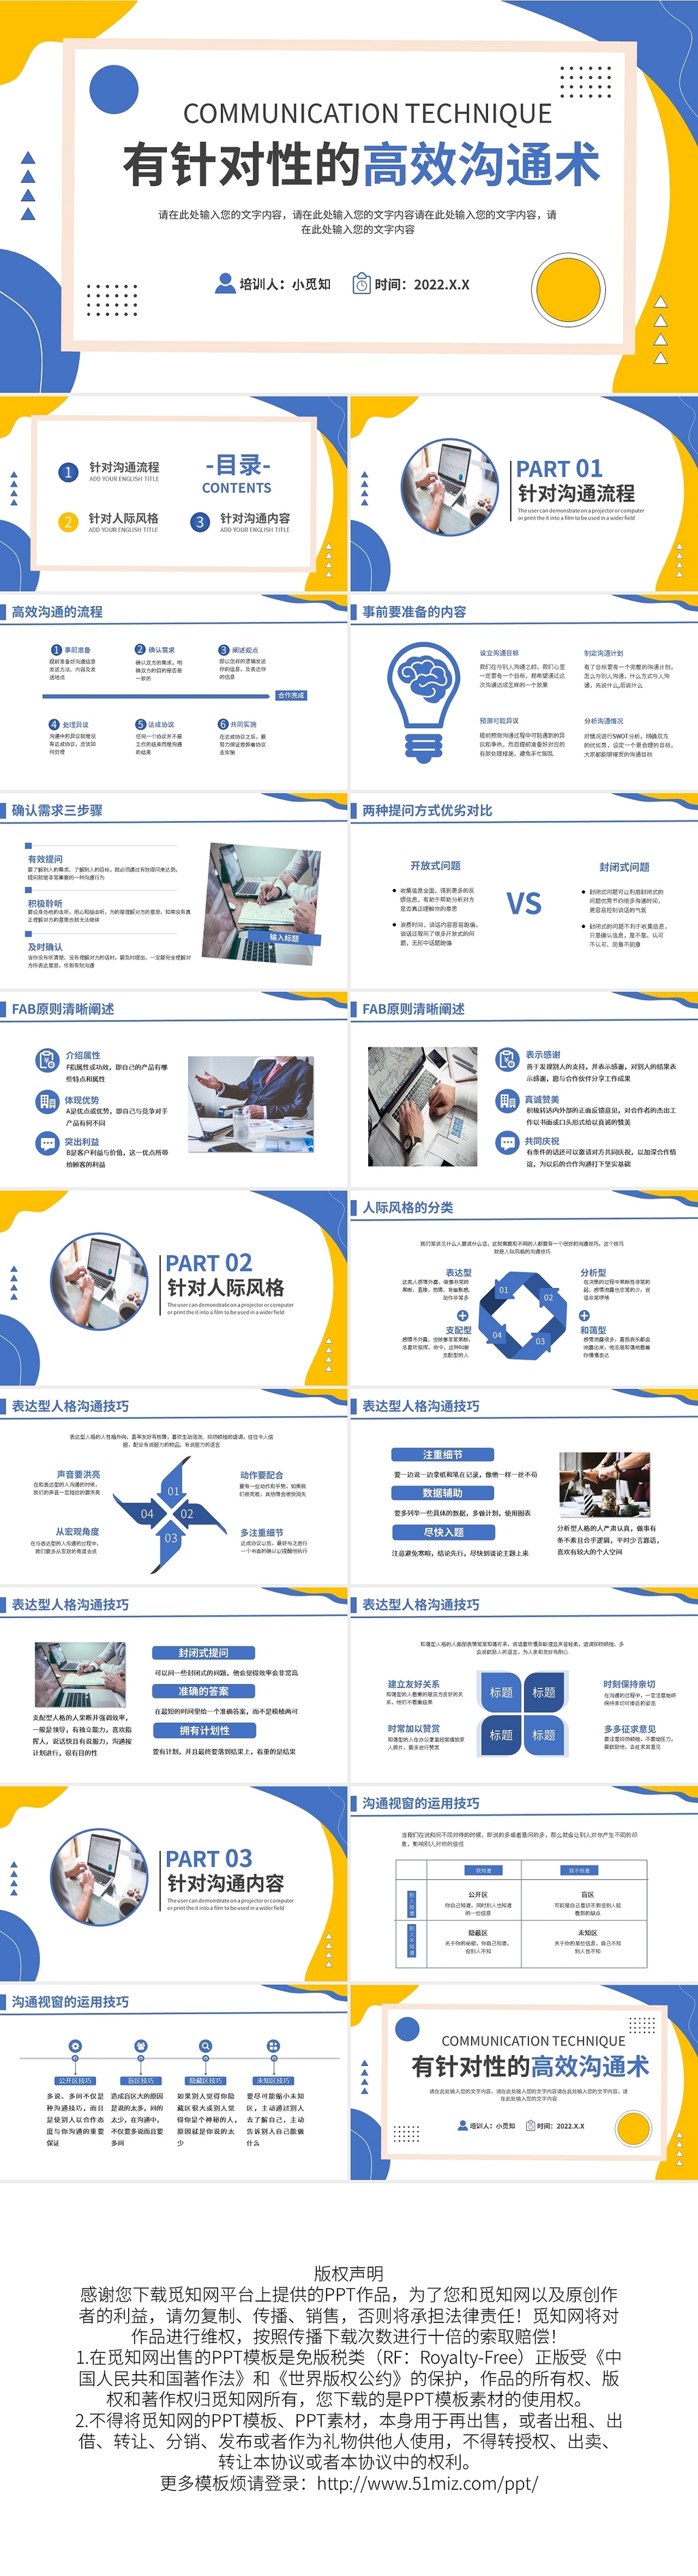 蓝黄简约有针对性的高效沟通术PPT模板宣传PPT动态PPT企业沟通能力培训